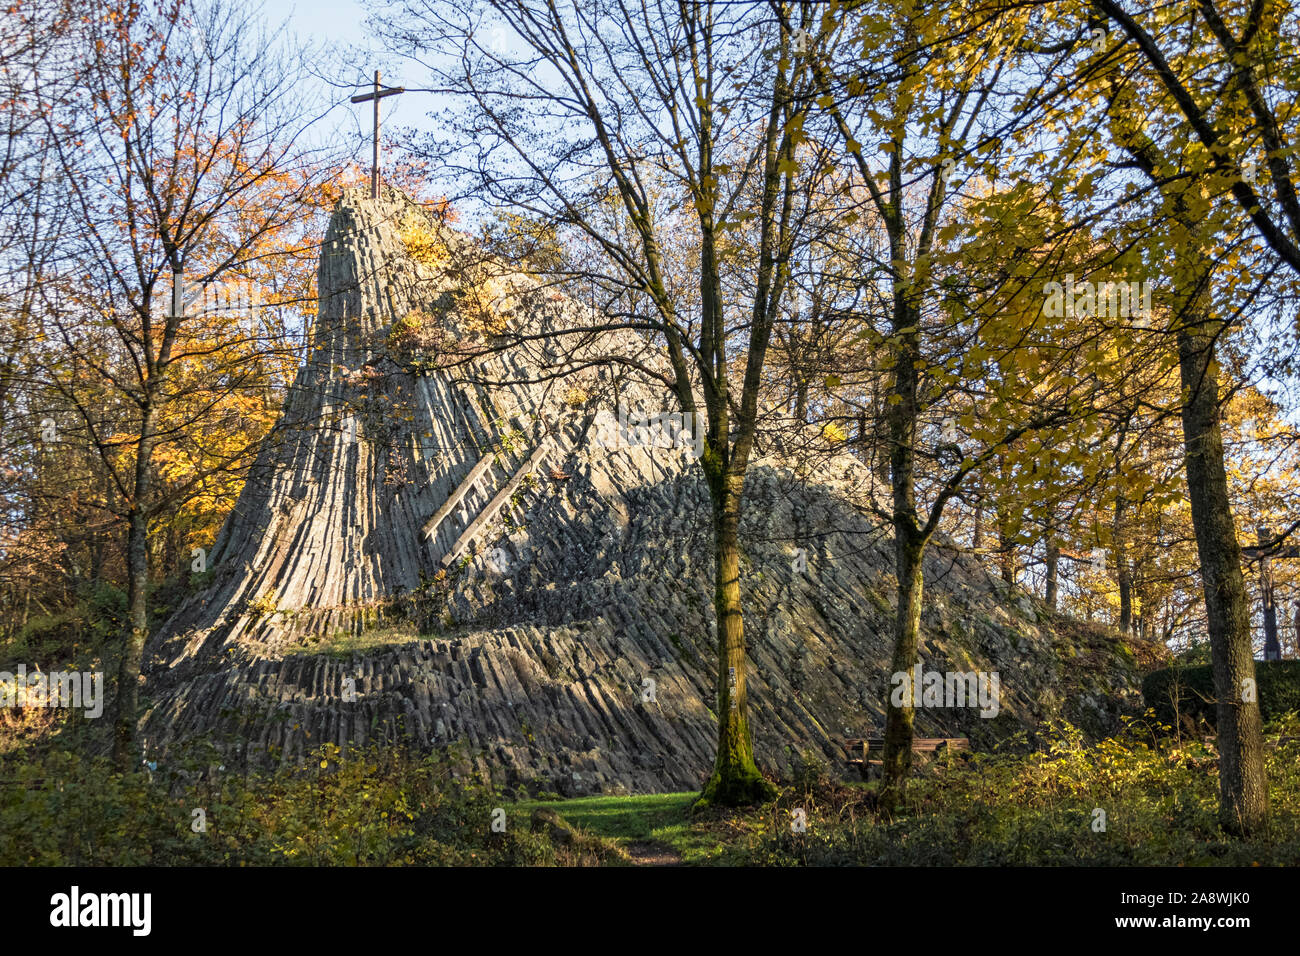 Der Druidenstein ist ein Basaltfels bei Kirchen NEL LAND RENANIA-PALATINATO, der vermutlich bereits von den Kelten als Versammlungsort genutzt wurde. Foto Stock